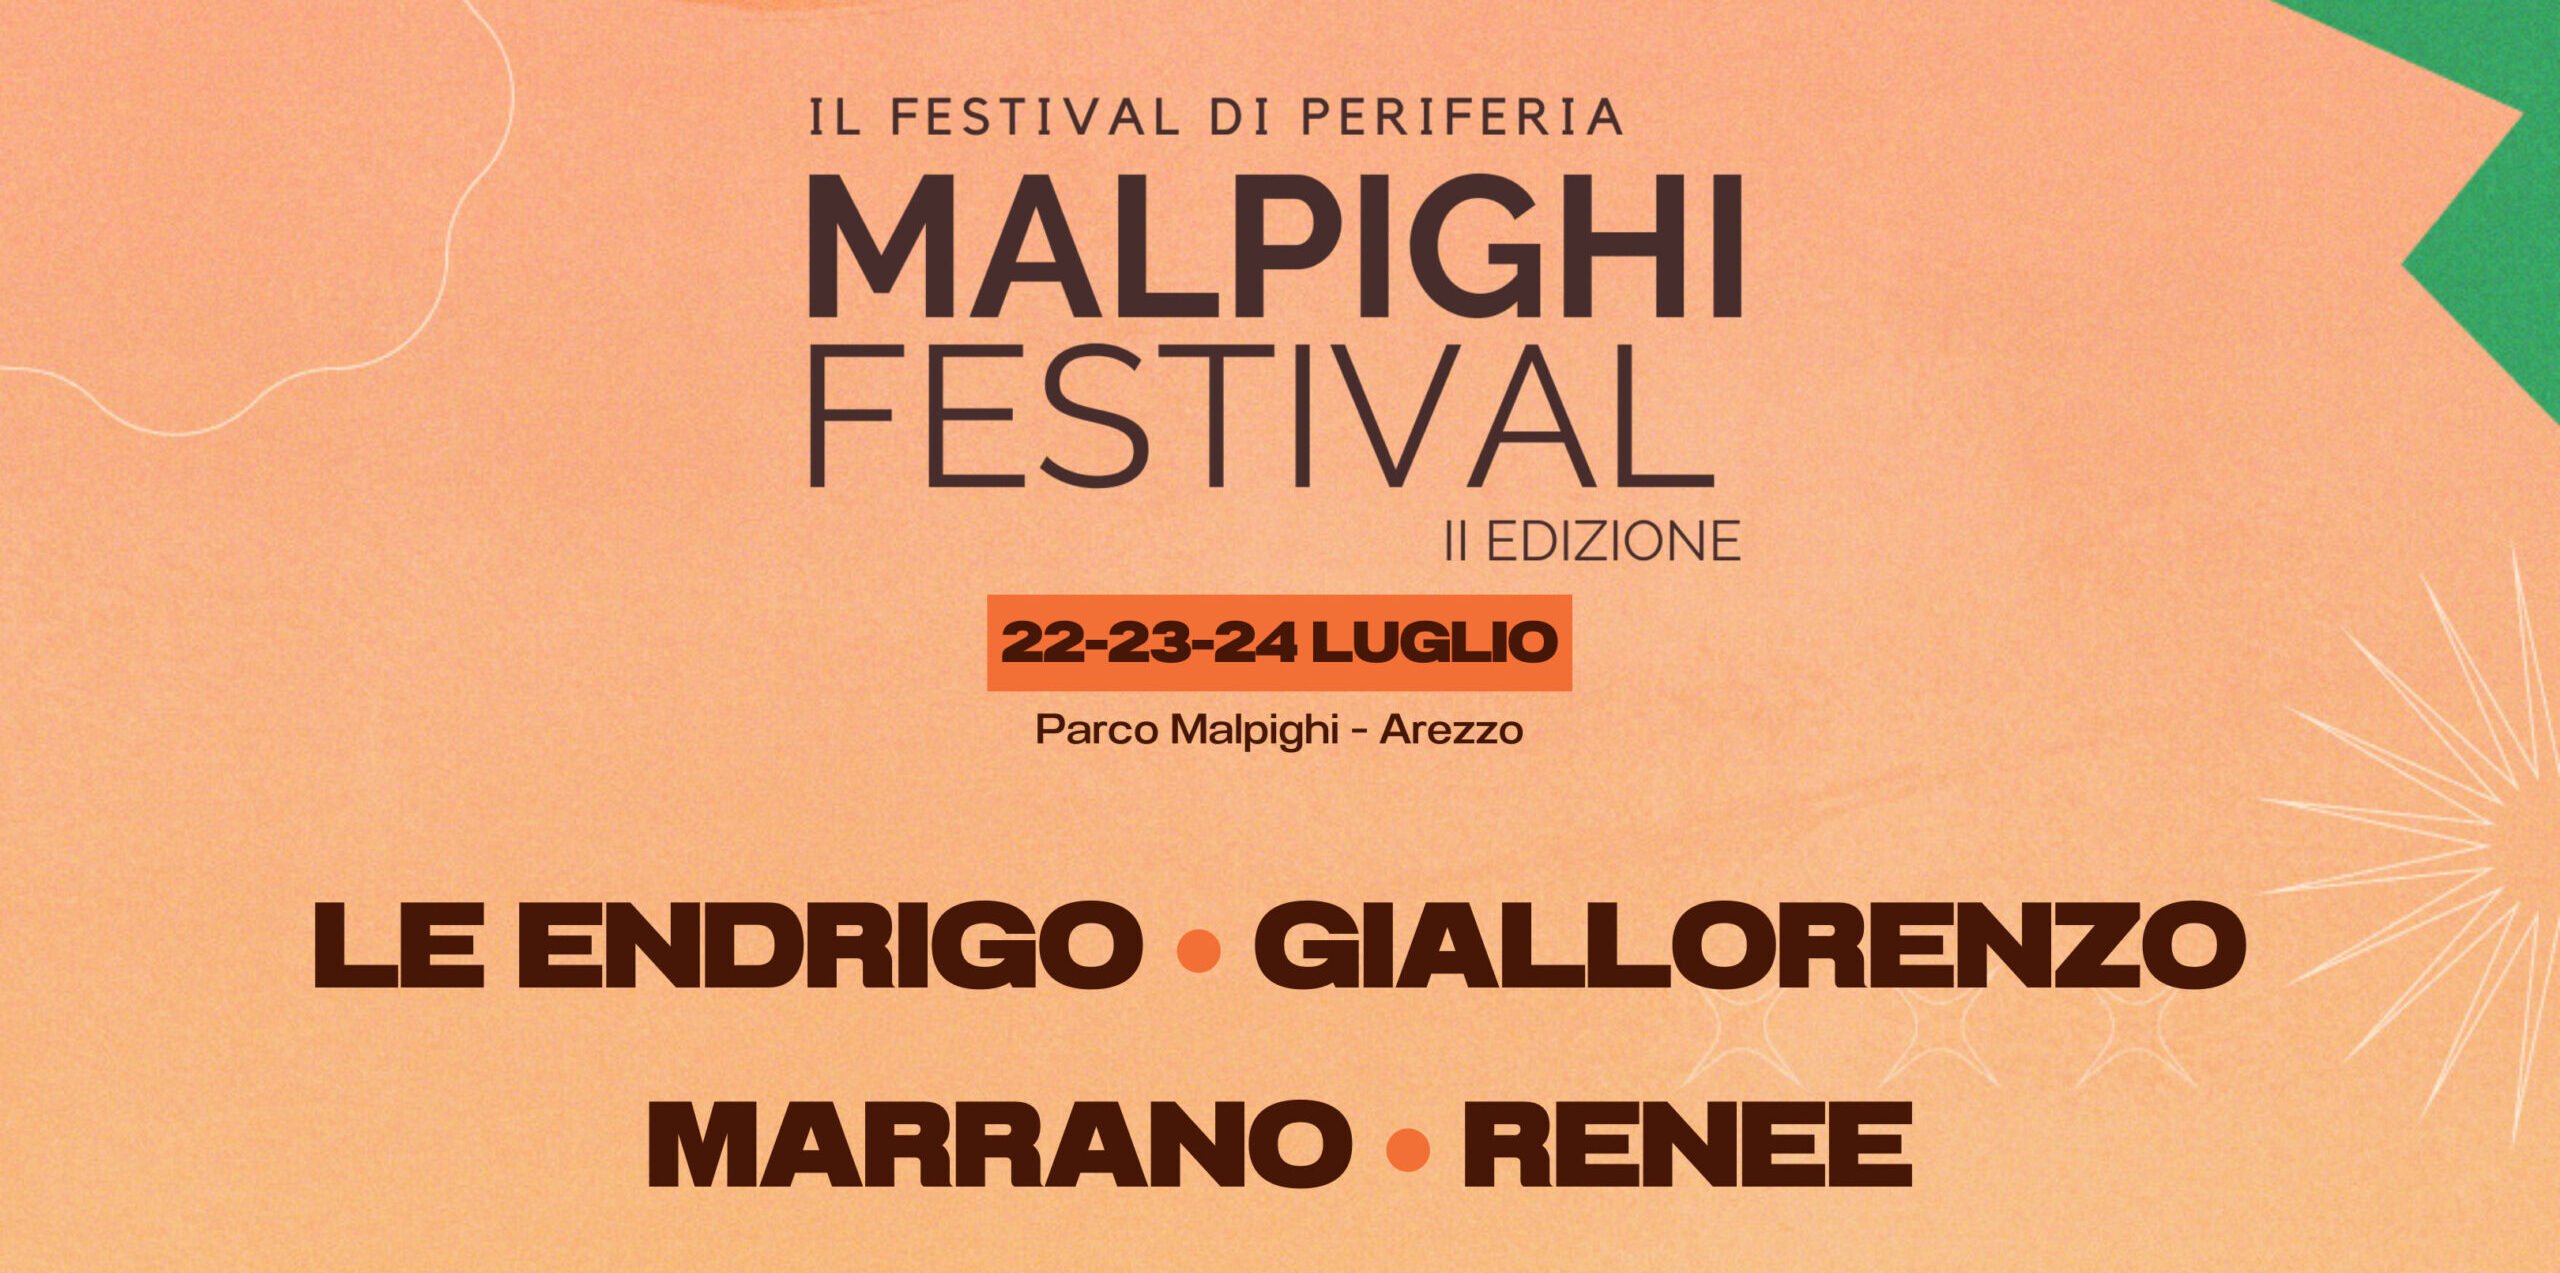 Seconda edizione di Malpighi Festival: ecco il programma del “Festival di Periferia”